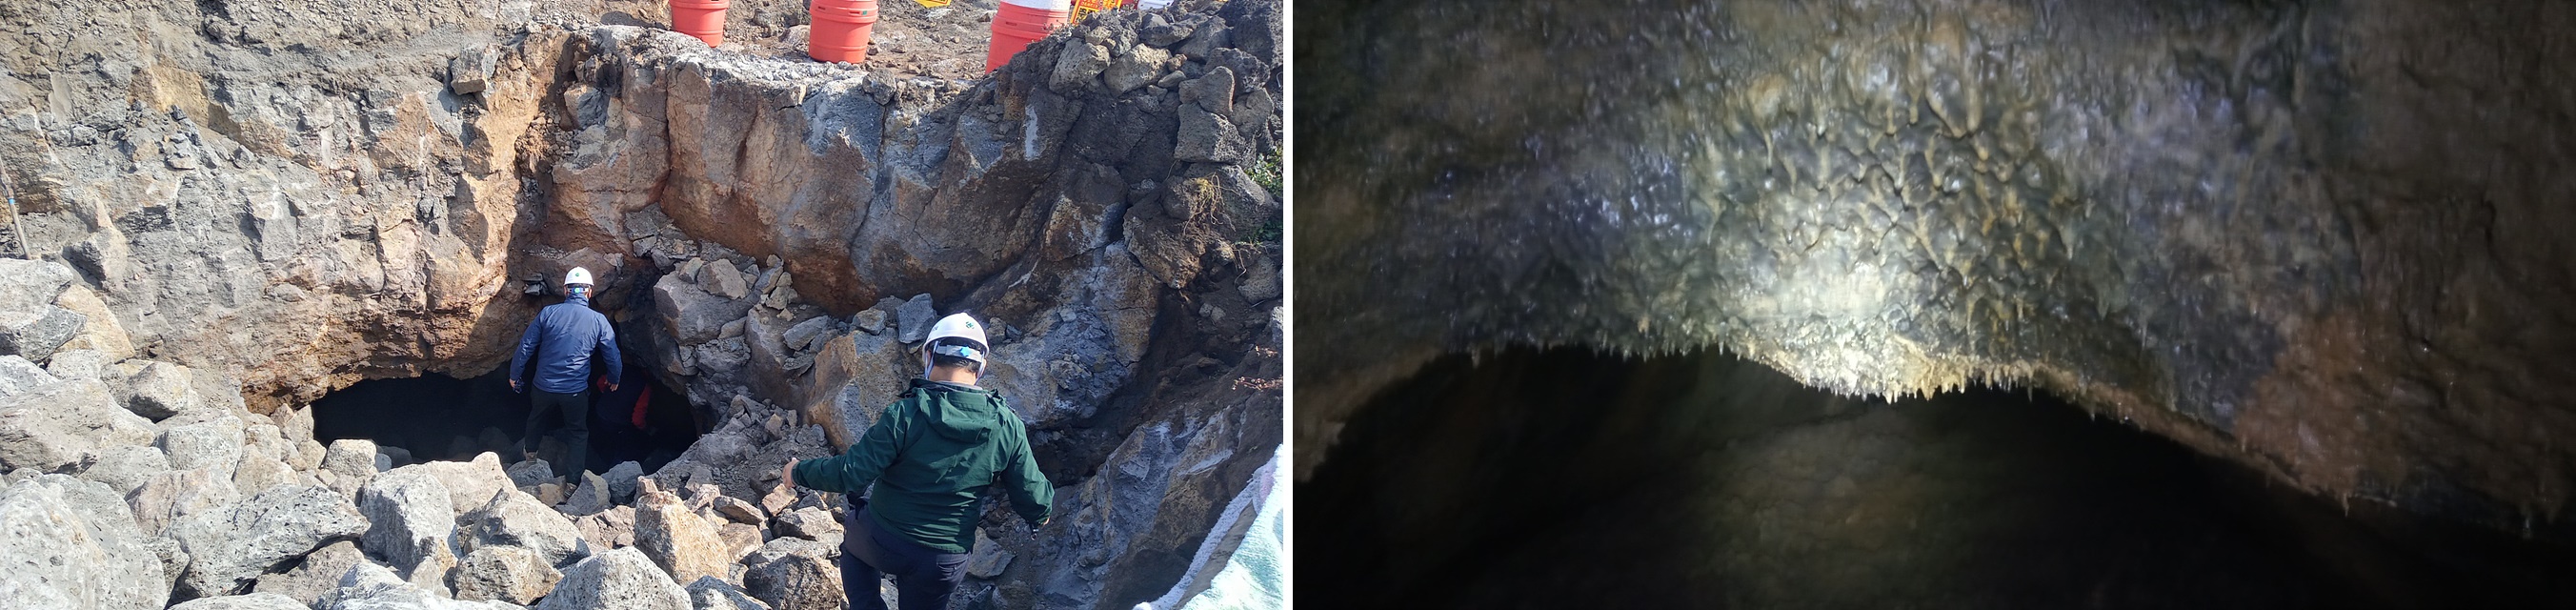 지난 3월 제주시 구좌읍 동복리 배수로 공사를 하다가 400m 길이의 용암동굴이 발견됐다. 제주도세계유산본부 제공